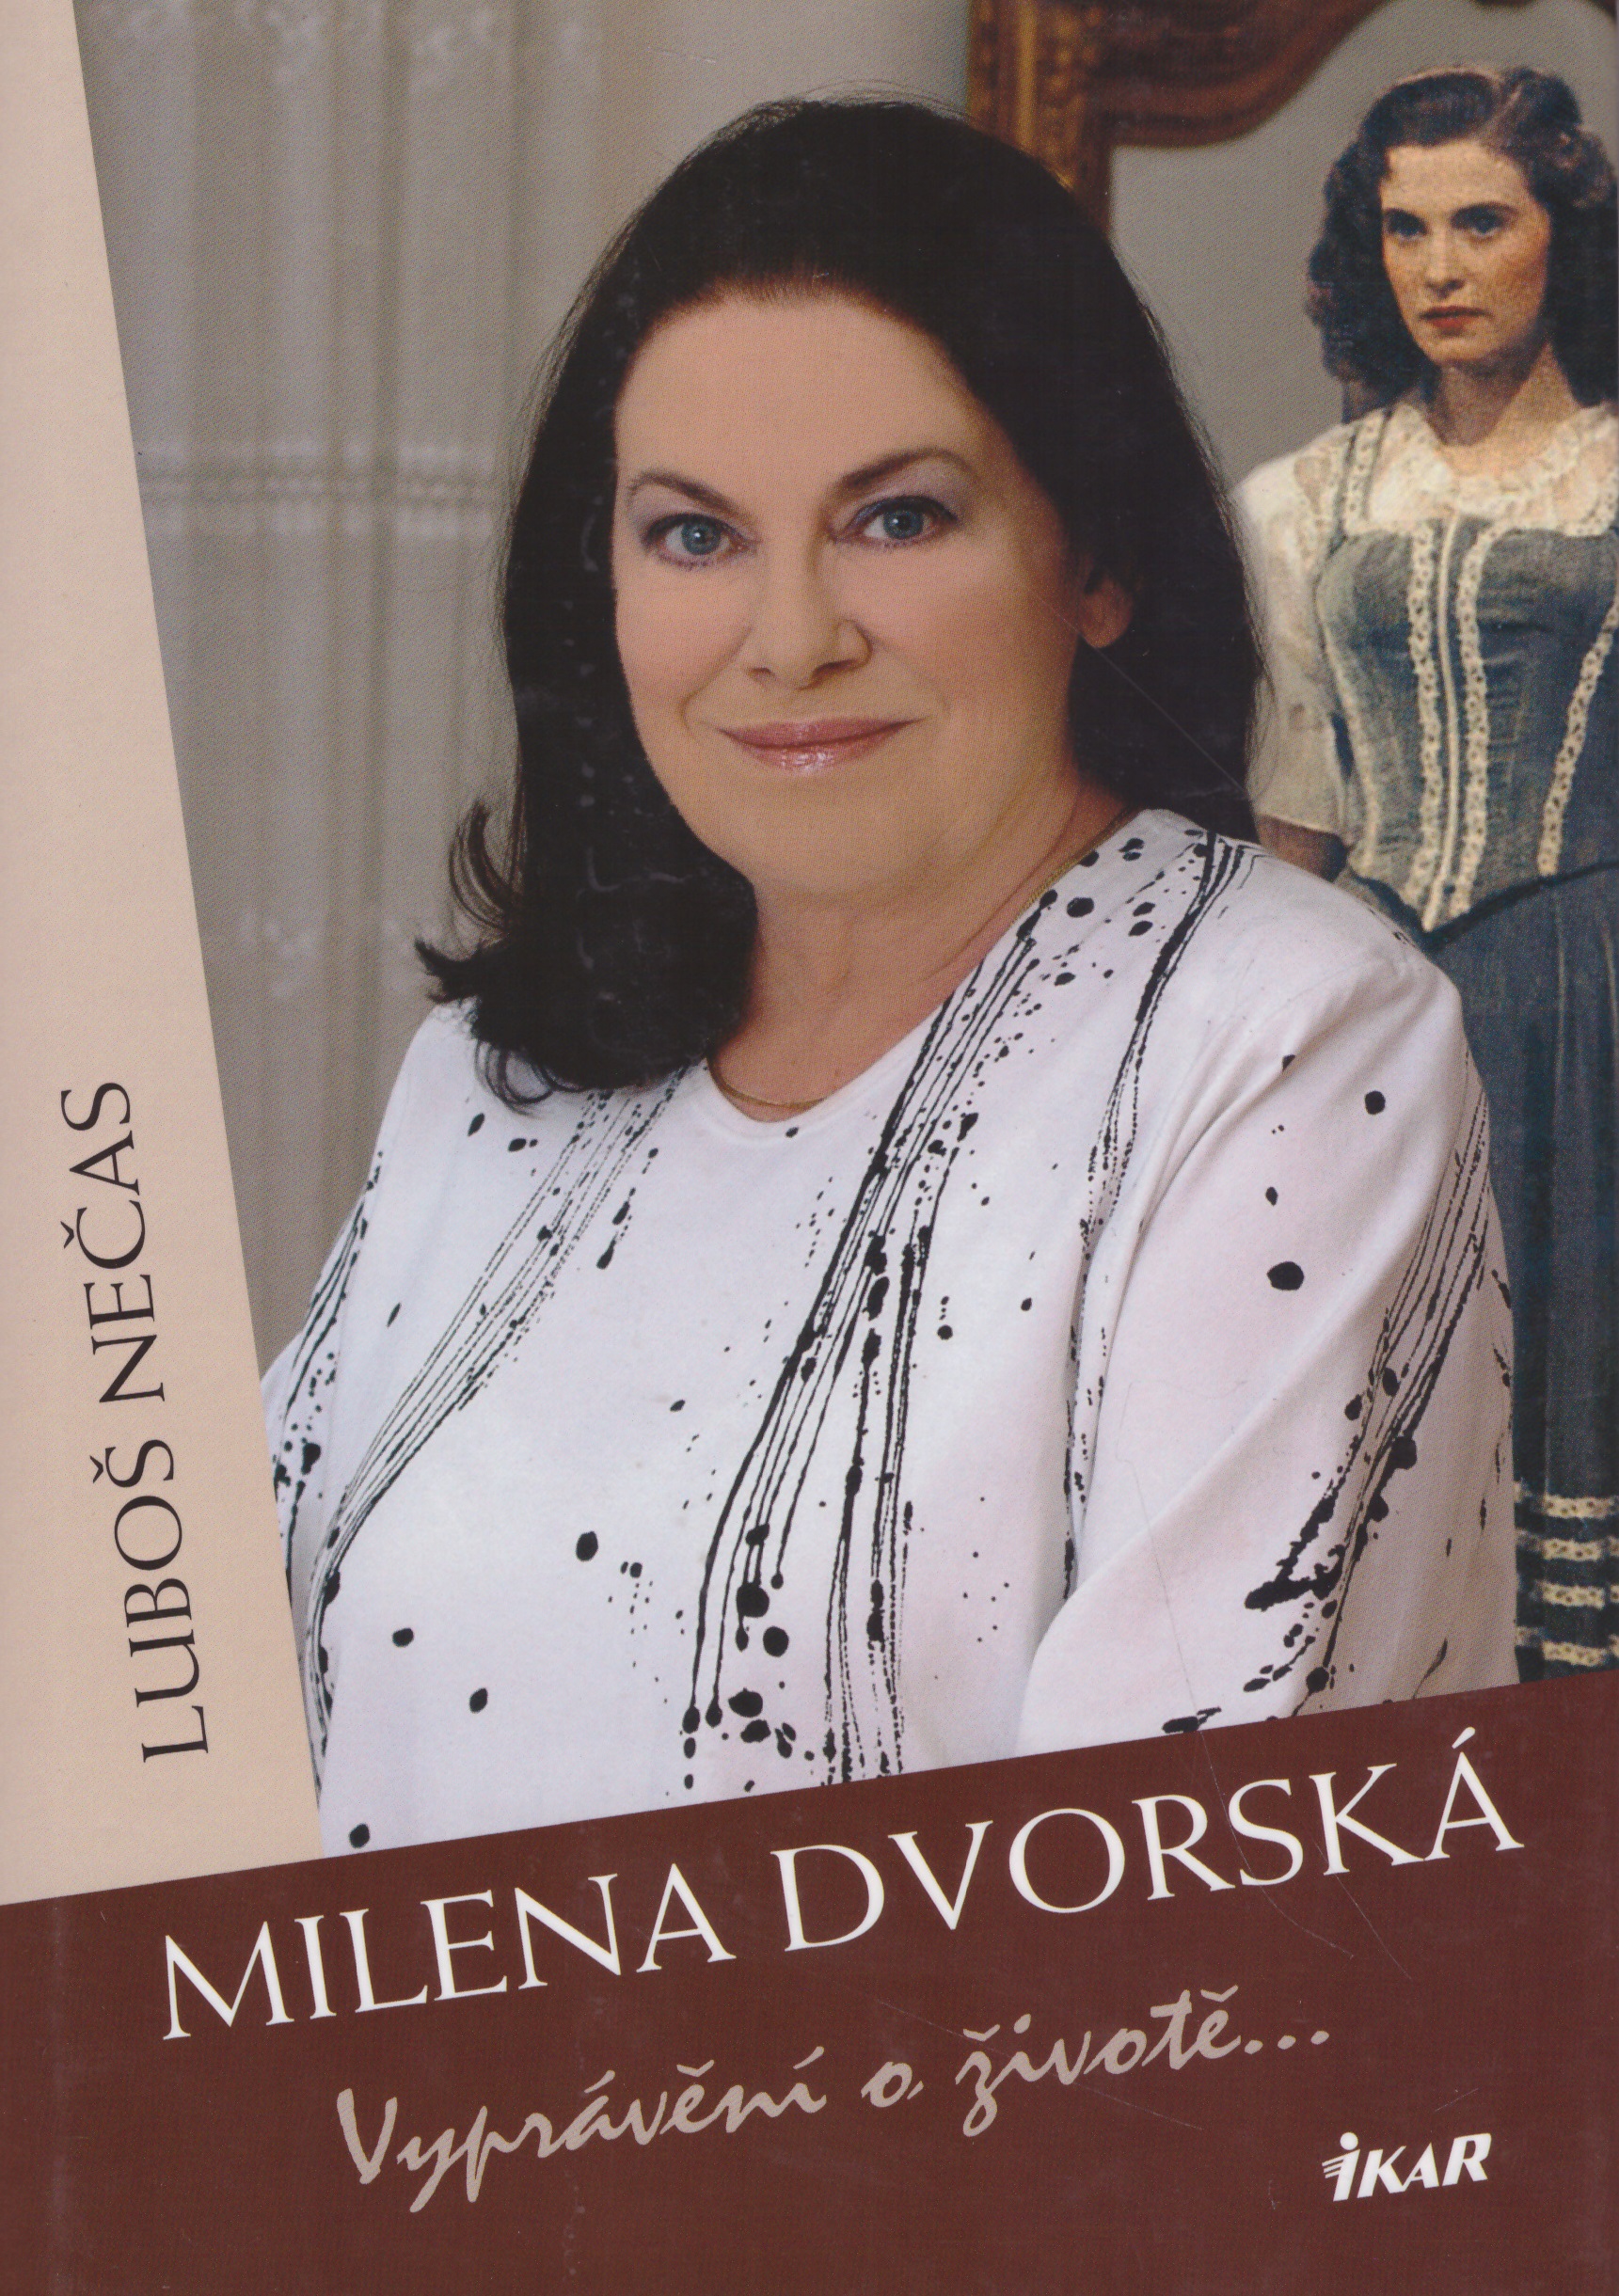 Milena Dvorská - Vyprávění o životě